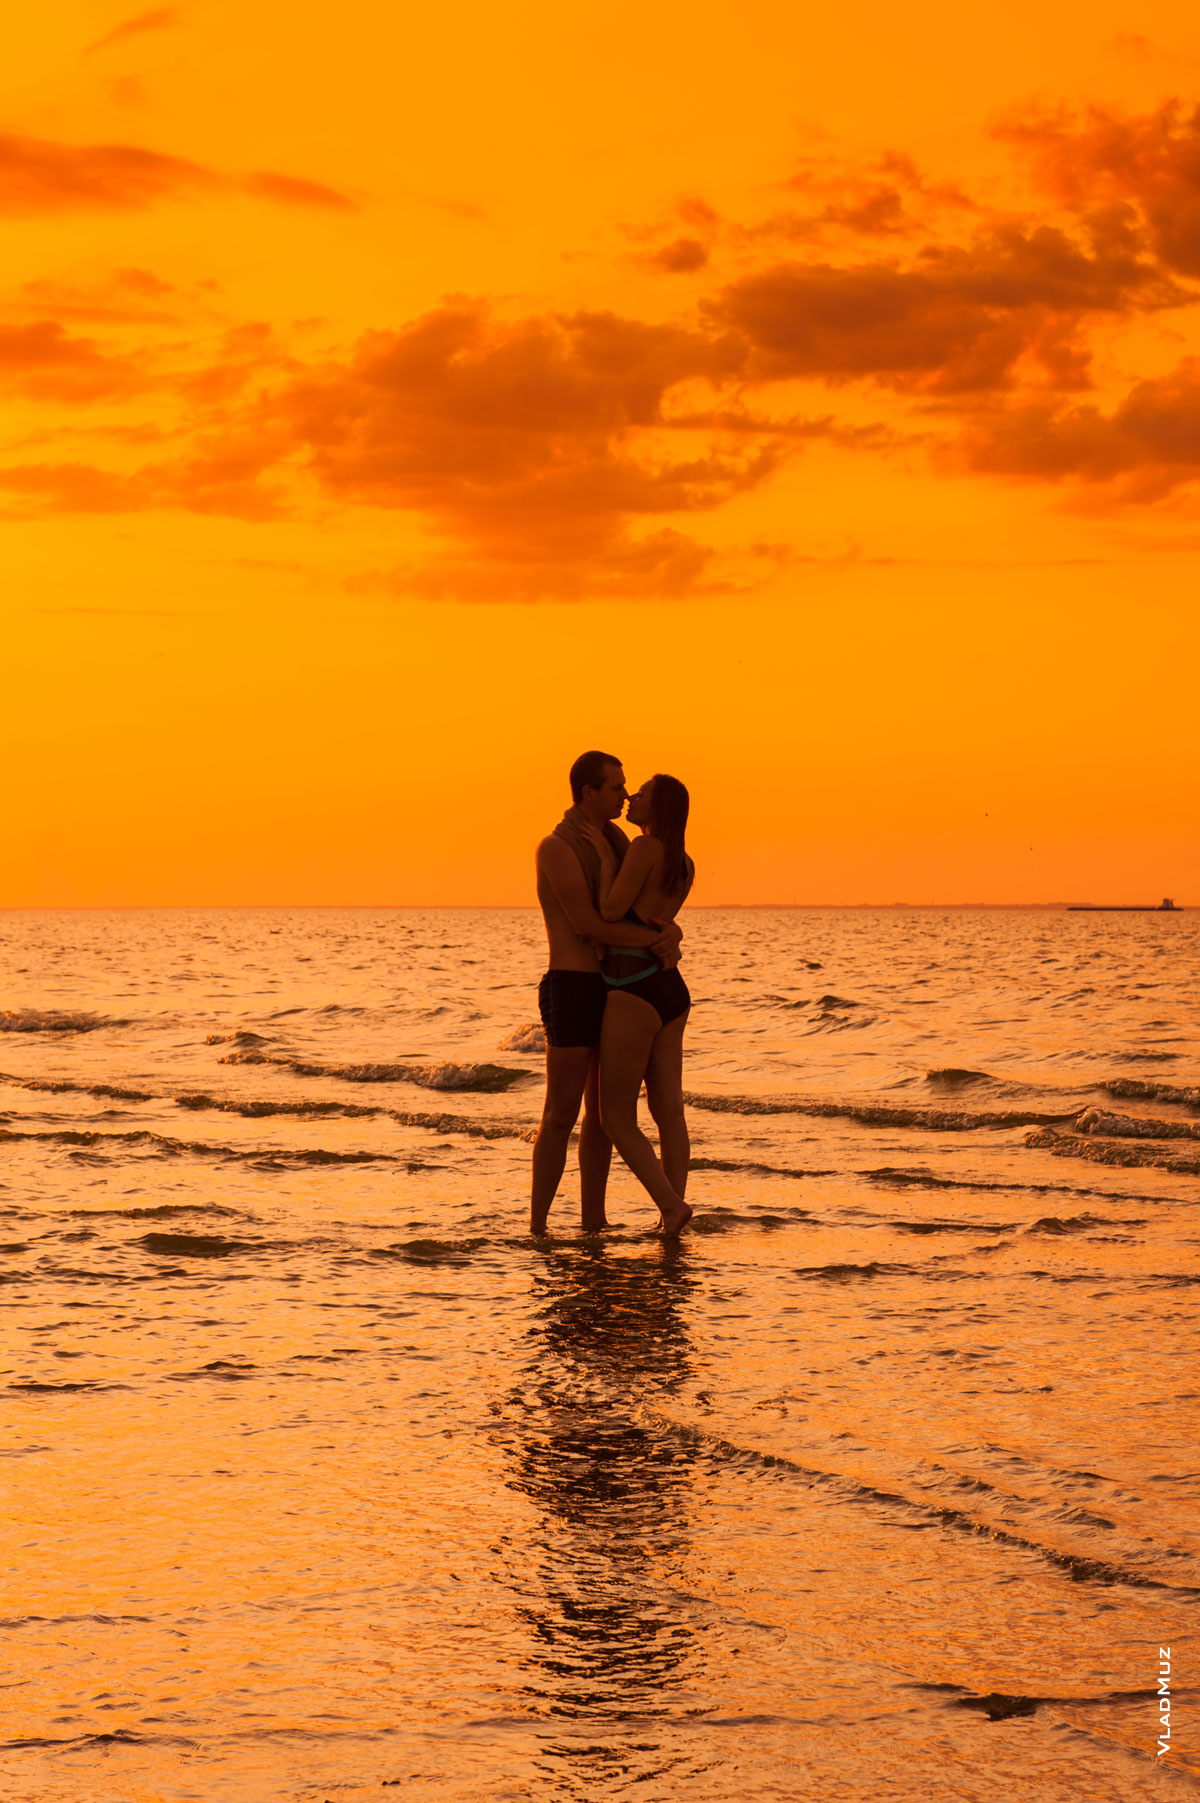 Фото влюбленной пары на закате, на Павло-Очаковской косе